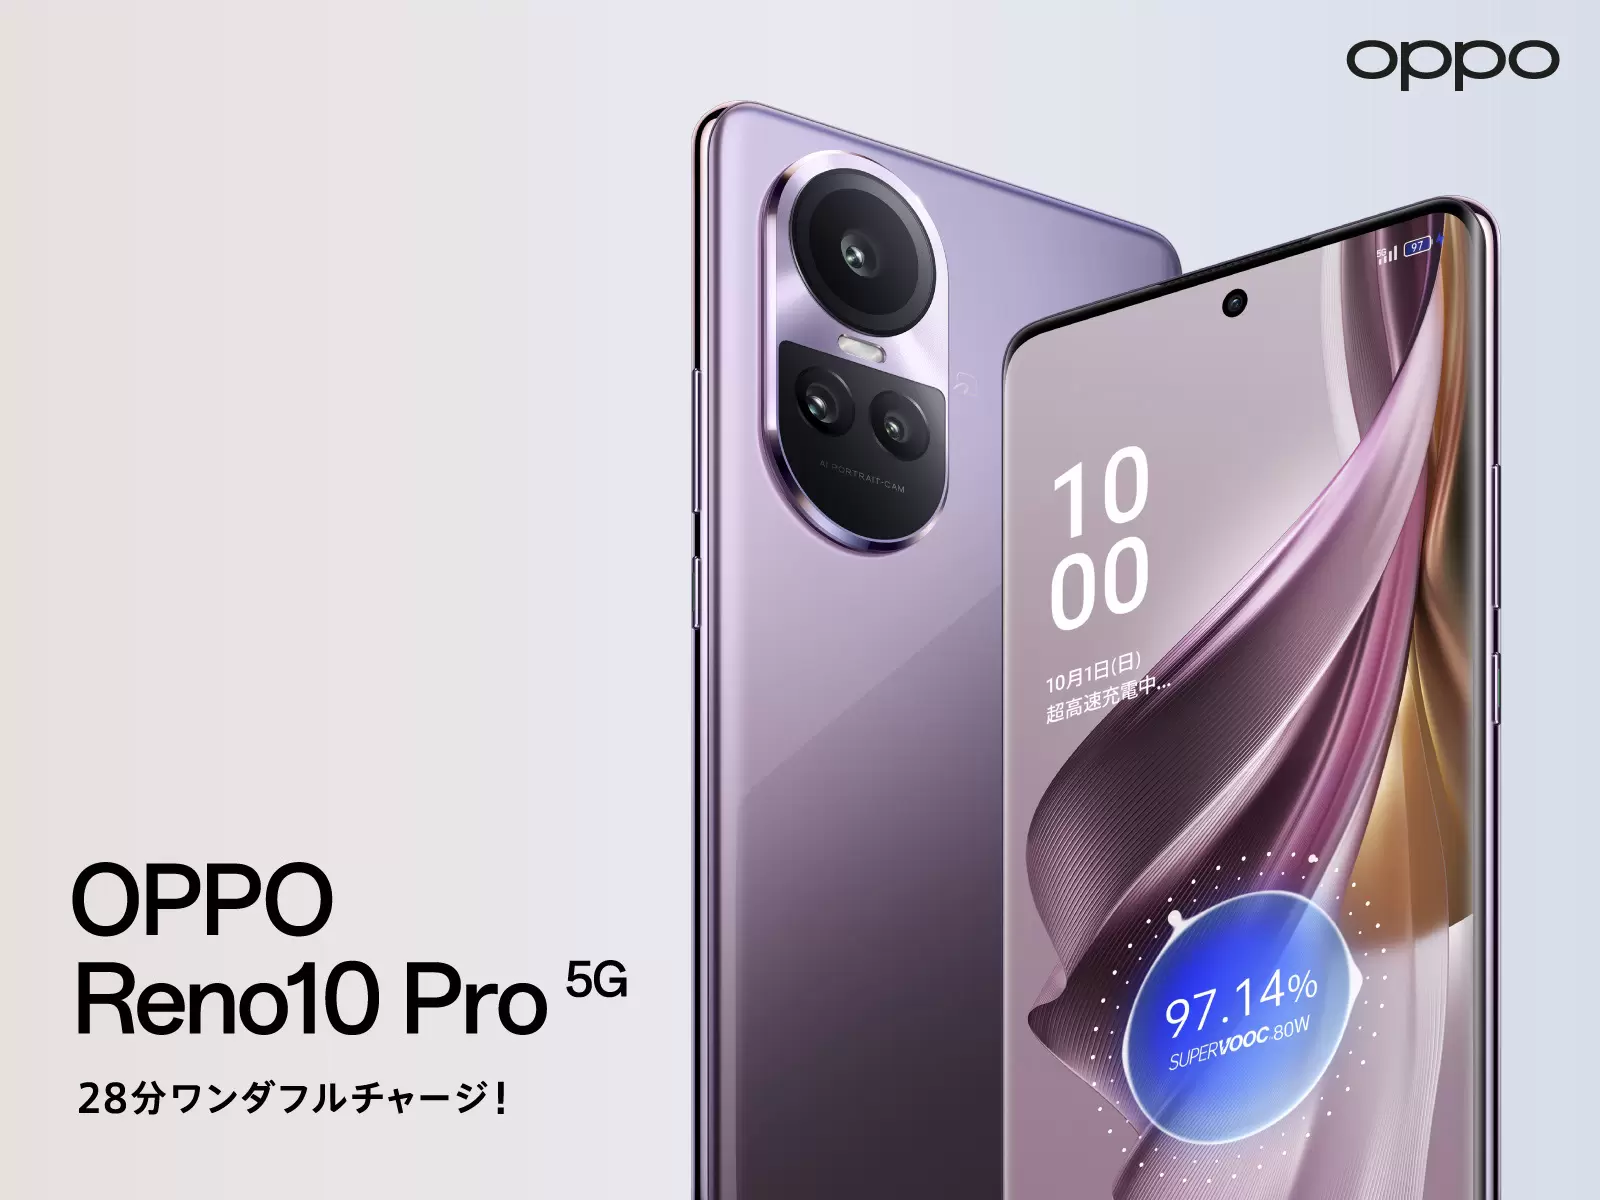 シルバーグレー【新品未使用】OPPO (オッポ) Oppo Reno10 Pro 5G 本体